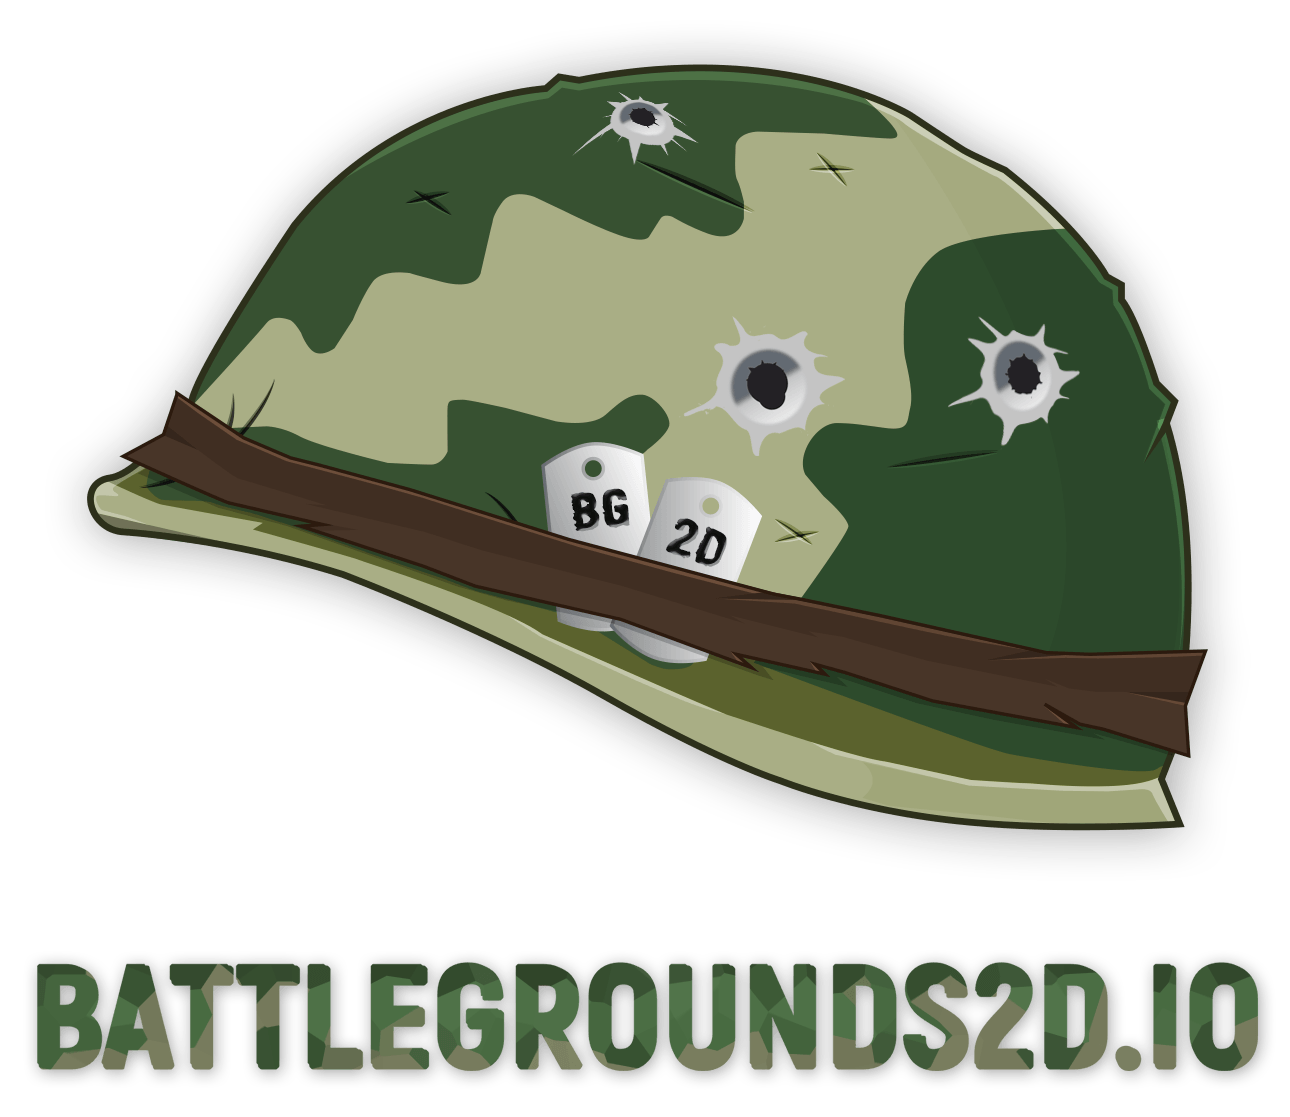 Battlegrounds 2D / Battle Royale 2D Logo